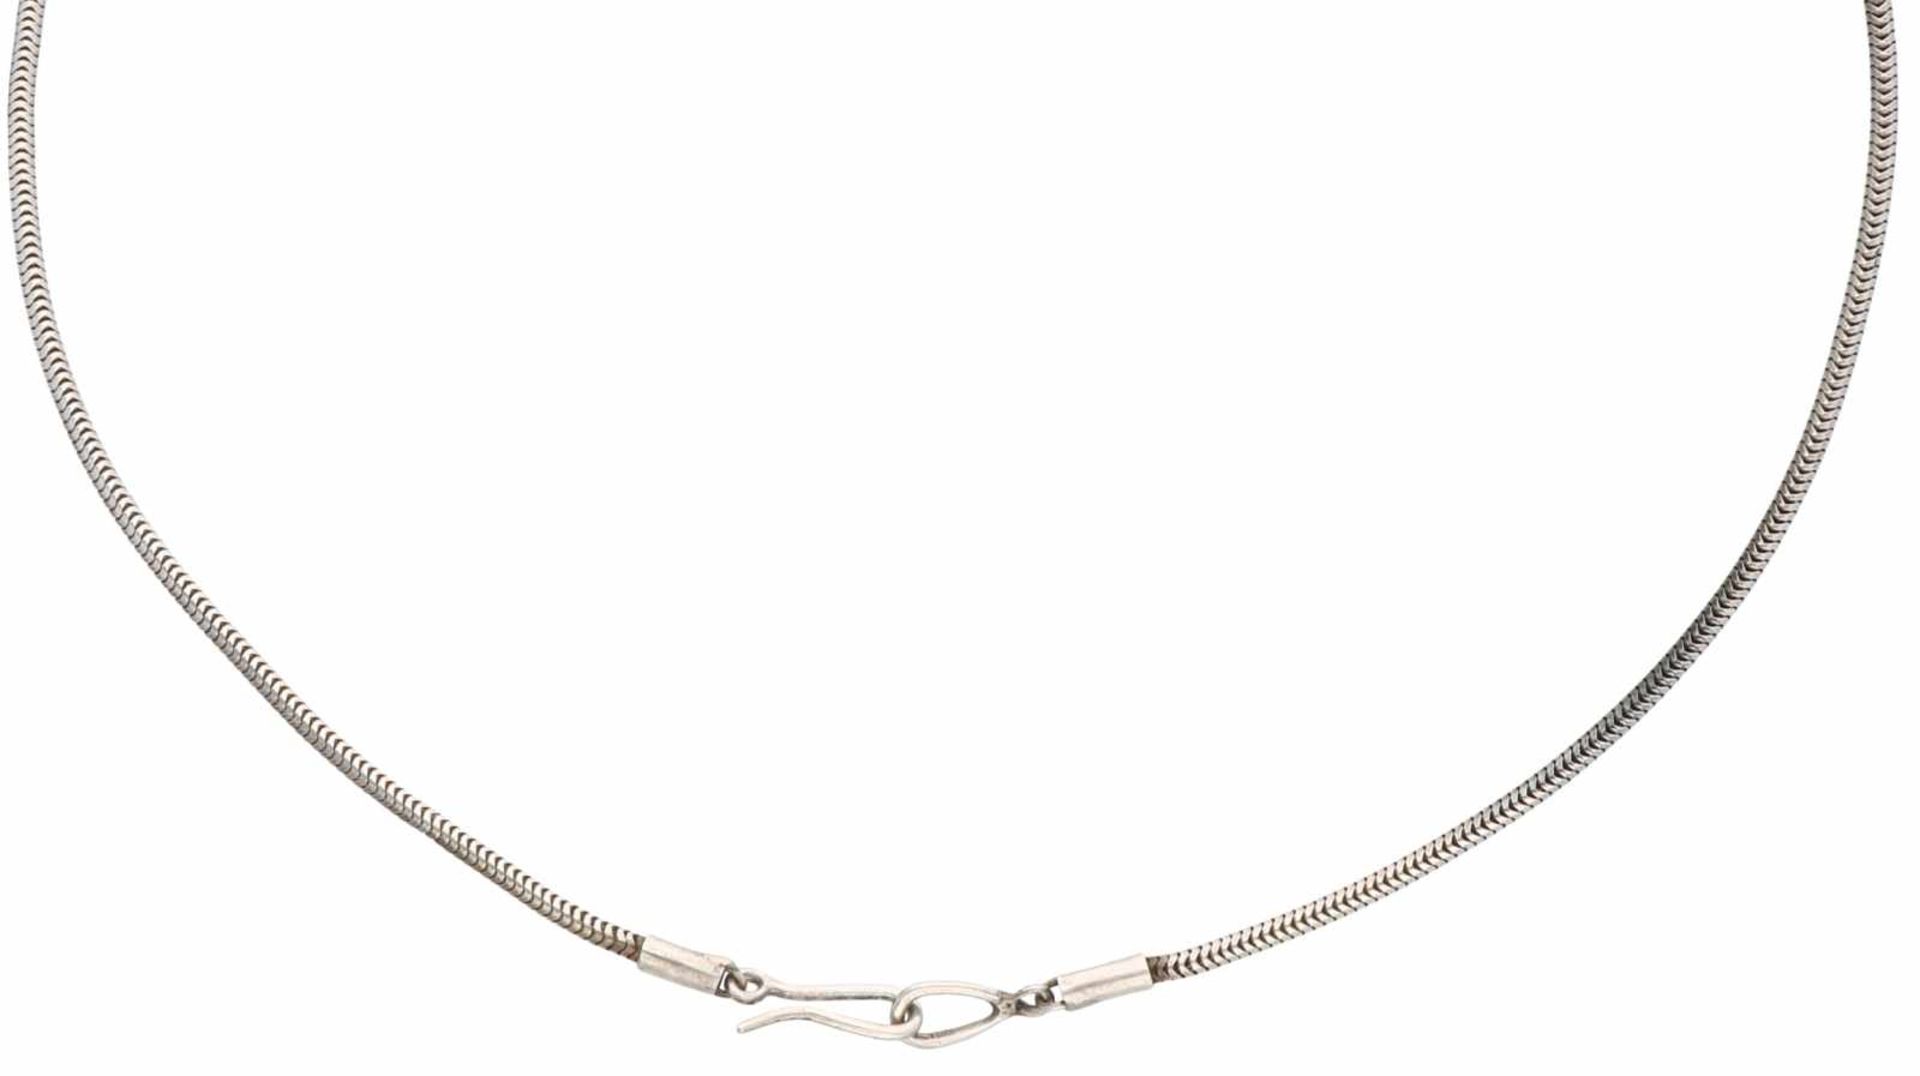 Design necklace silver - 835/1000. - Bild 2 aus 2